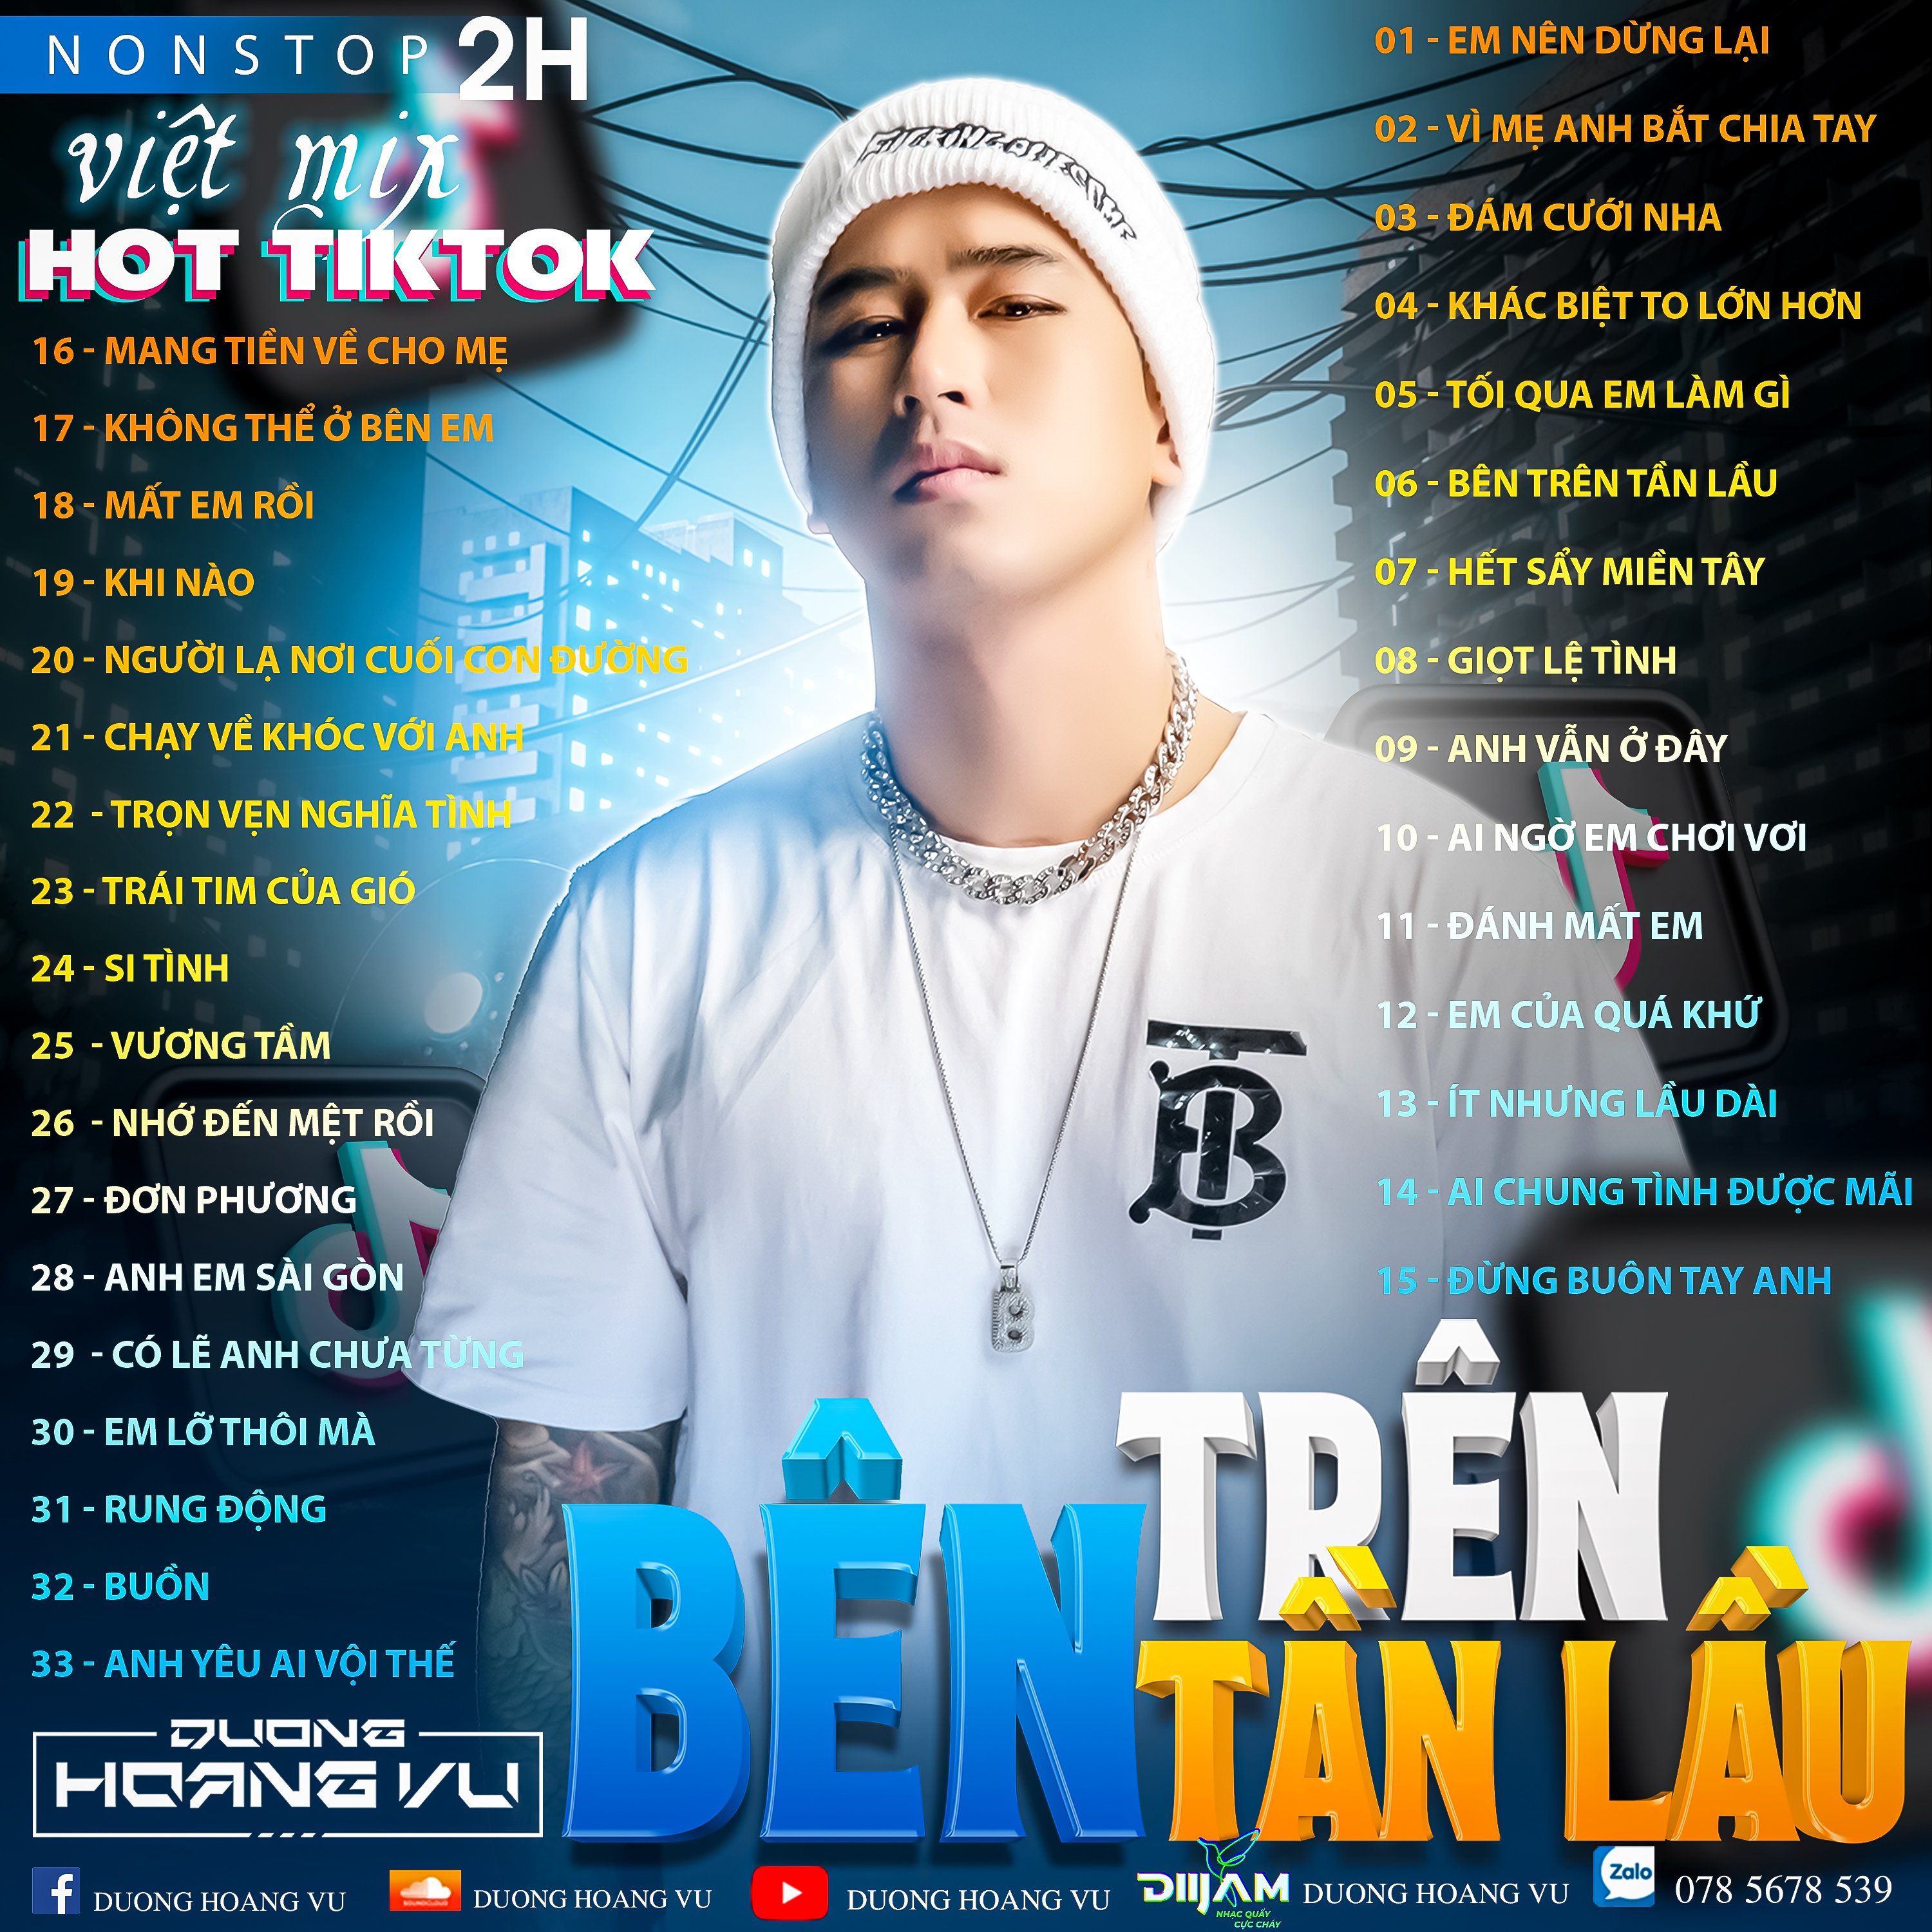 Unduh (Demo ) Nst Việt Mix Hot tiktok 2h - 2022 - DJ Dương Hoàng Vũ Mix Mua Full IB Zalo 078.5678.539